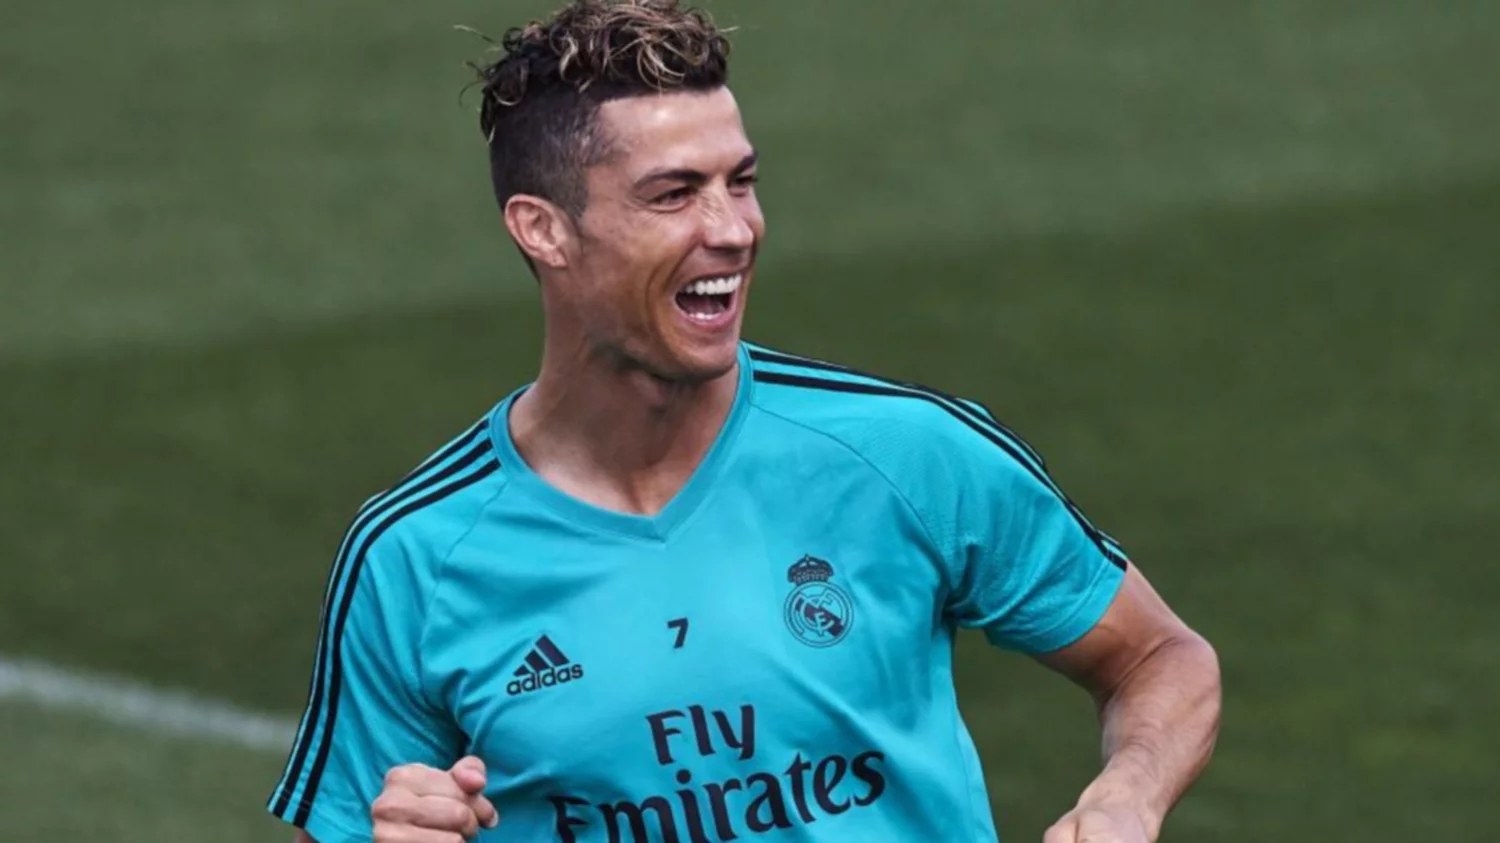 El vídeo viral sobre cómo aprovechar la camiseta de Cristiano Ronaldo del  Real Madrid